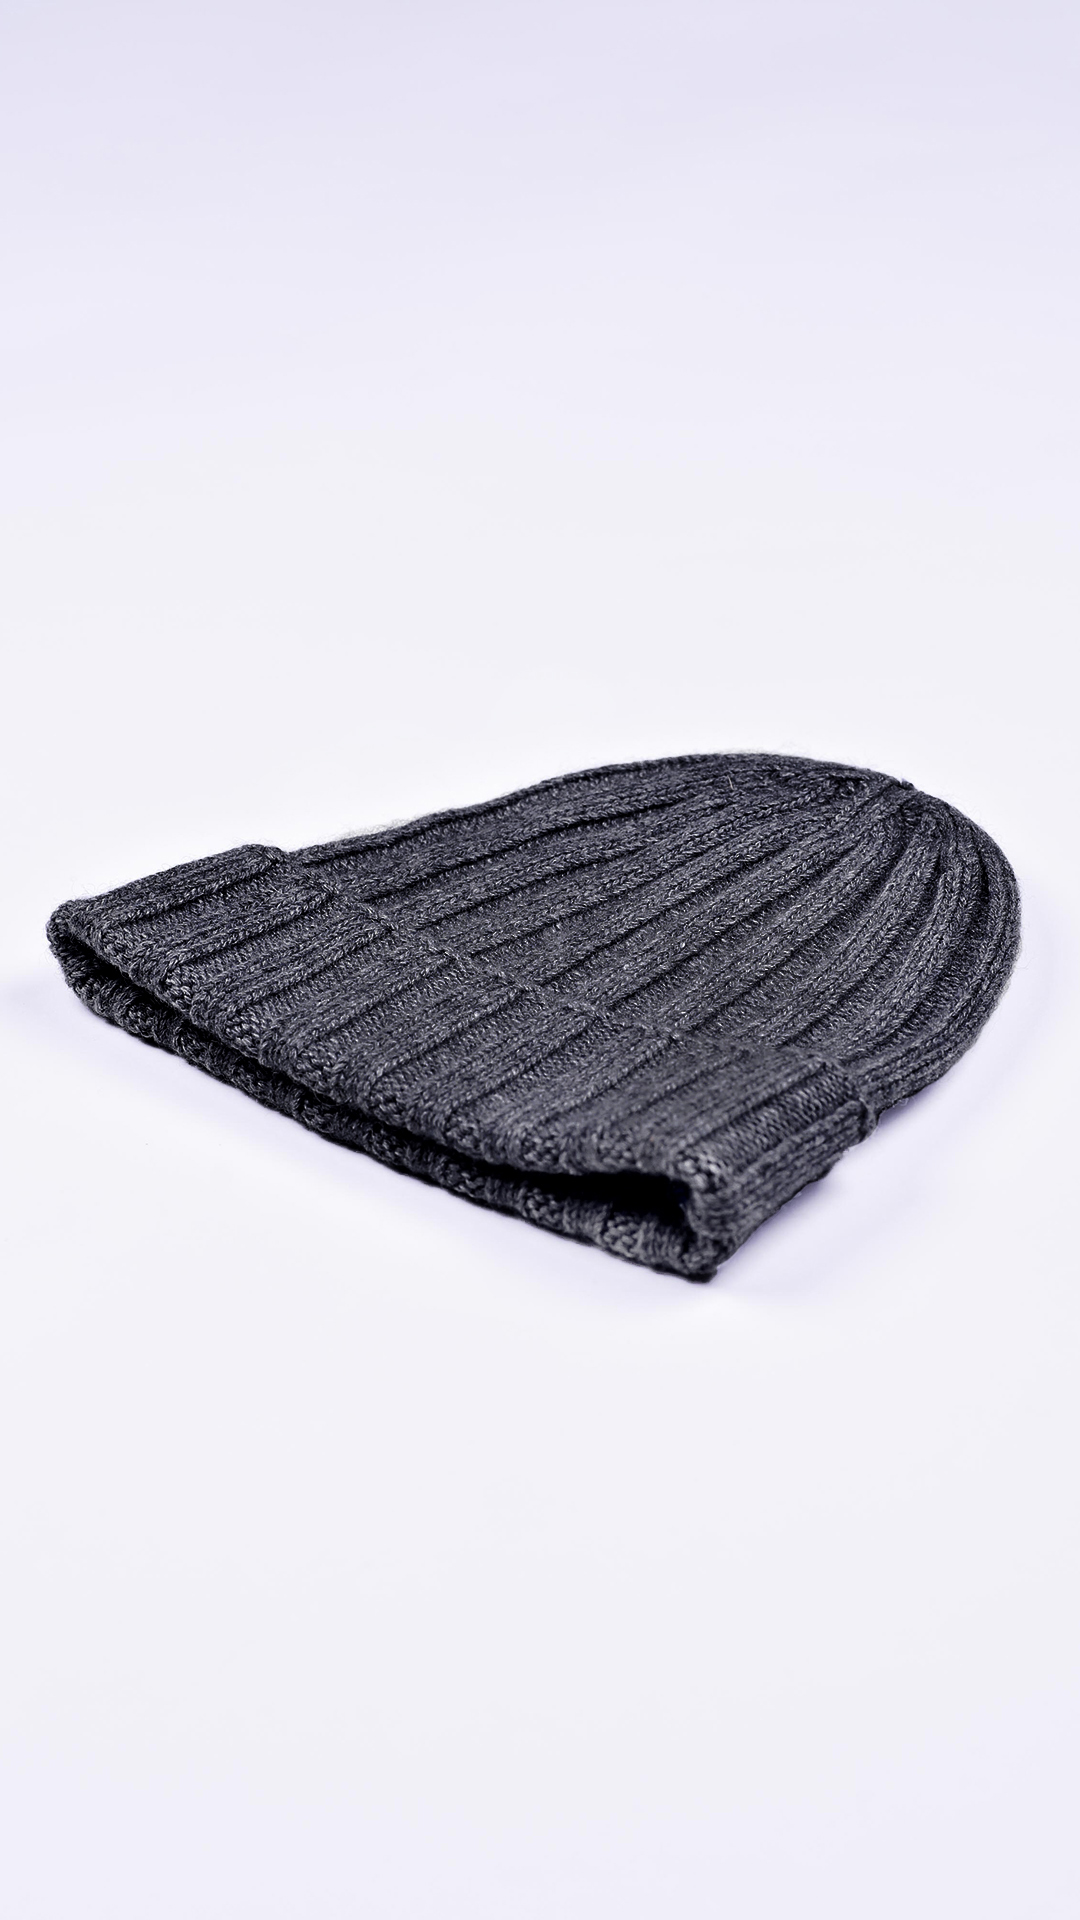 Wallisdario grigio m 2 1stAmerican cappellino lana e cashmere Made in Italy da uomo - caldo berretto invernale a coste larghe